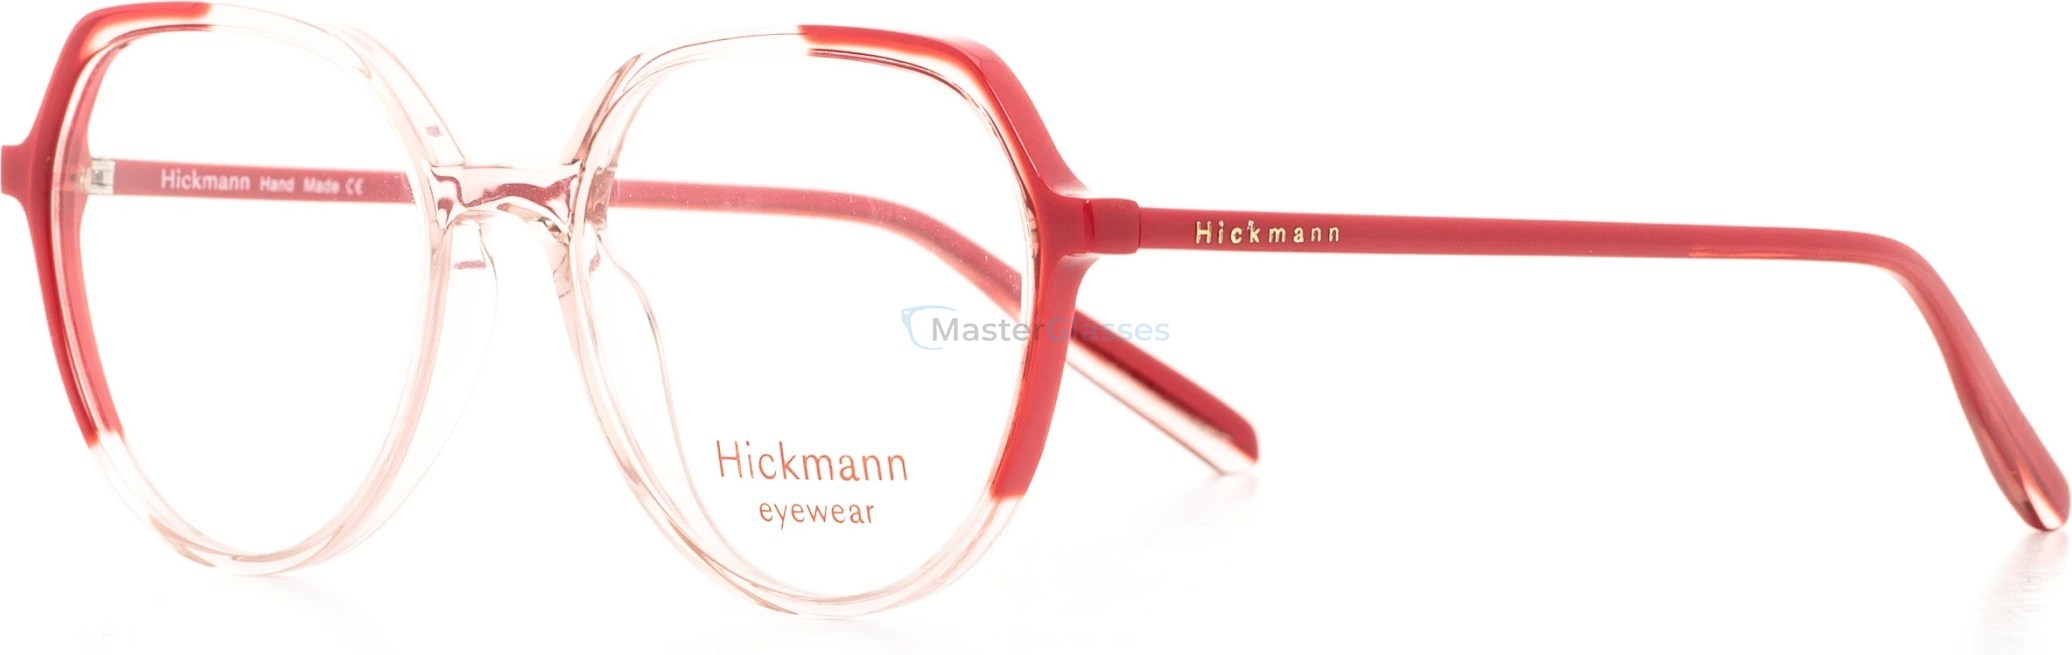  Hickmann HIY6001 P02